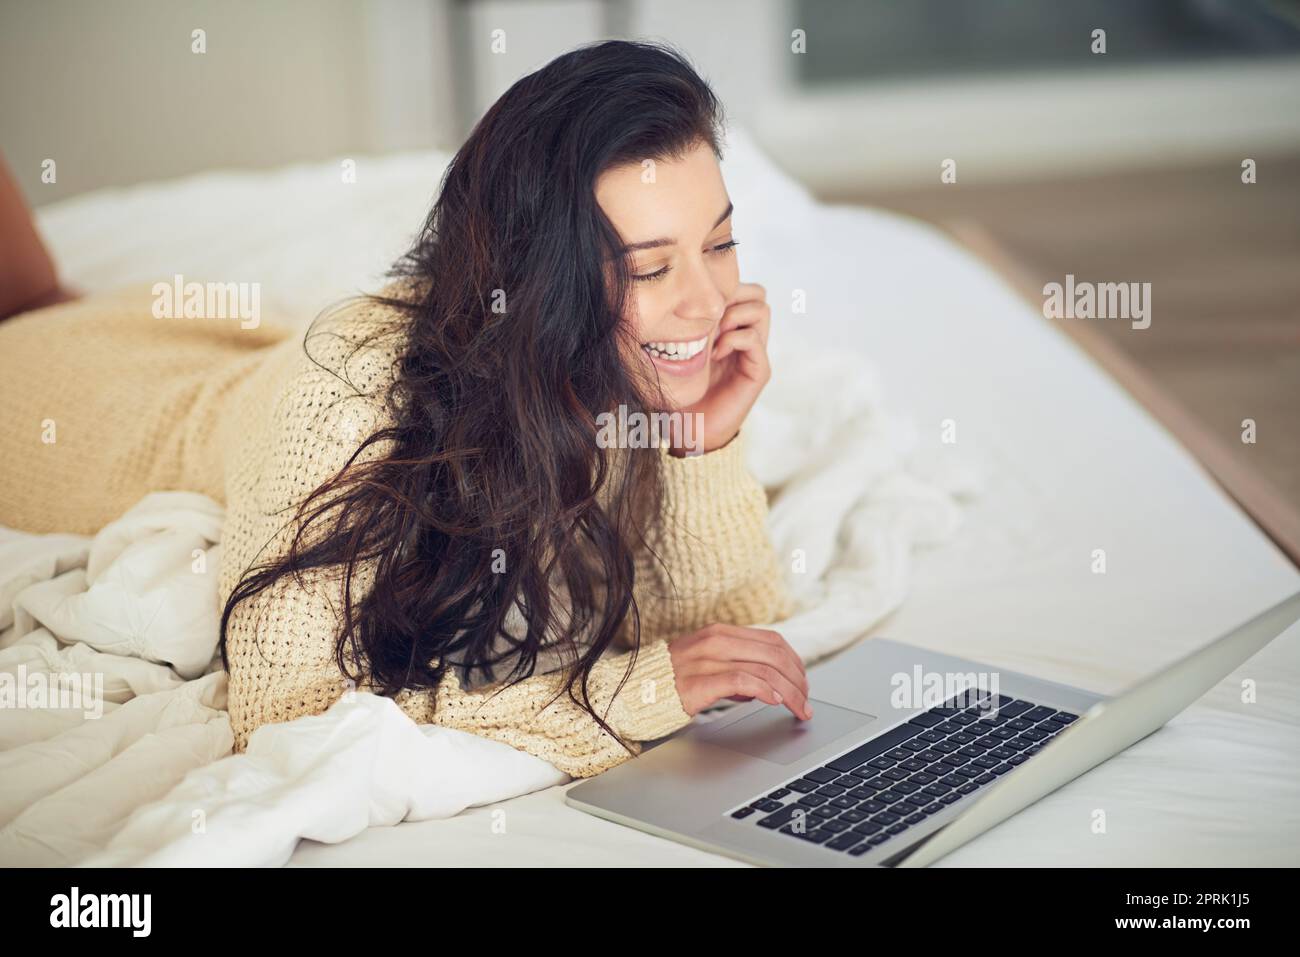 Eine junge Frau, die ihren Laptop benutzt, während sie auf ihrem Bett liegt. Stockfoto